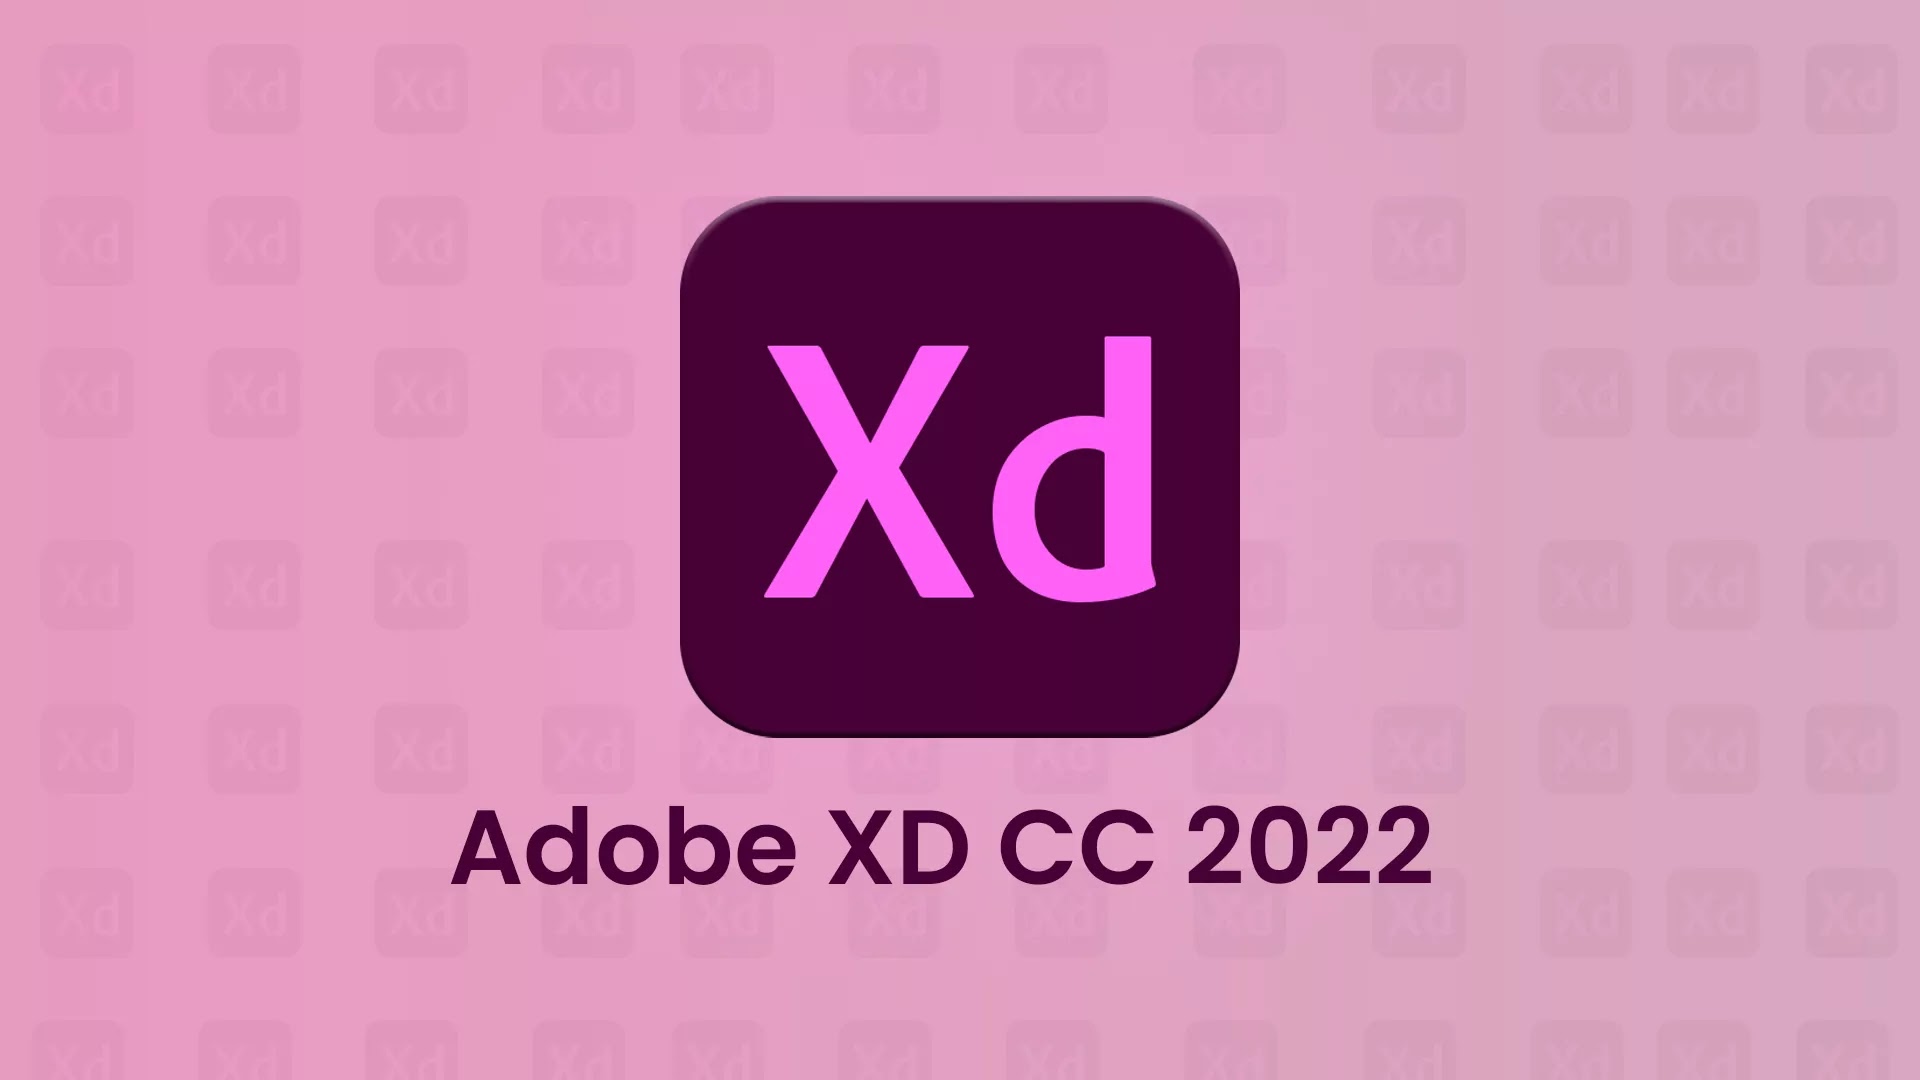 Adobe XD CC 2022